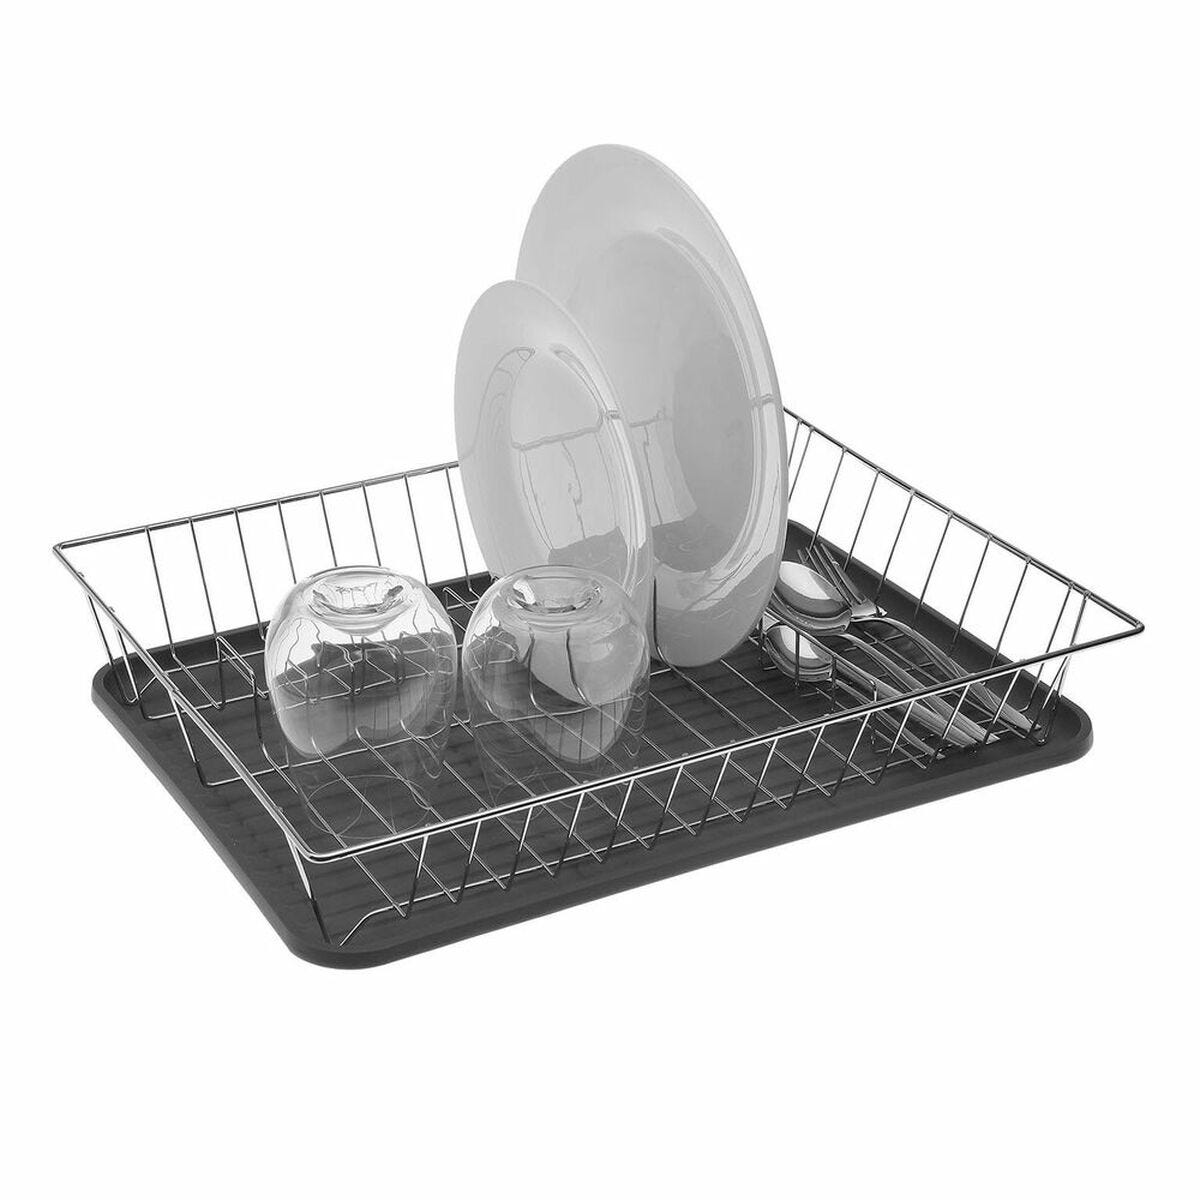 ALUMINIUM ET PLASTIQUE - Egouttoir à vaisselle + plateau - 48x35.5 cm - gris